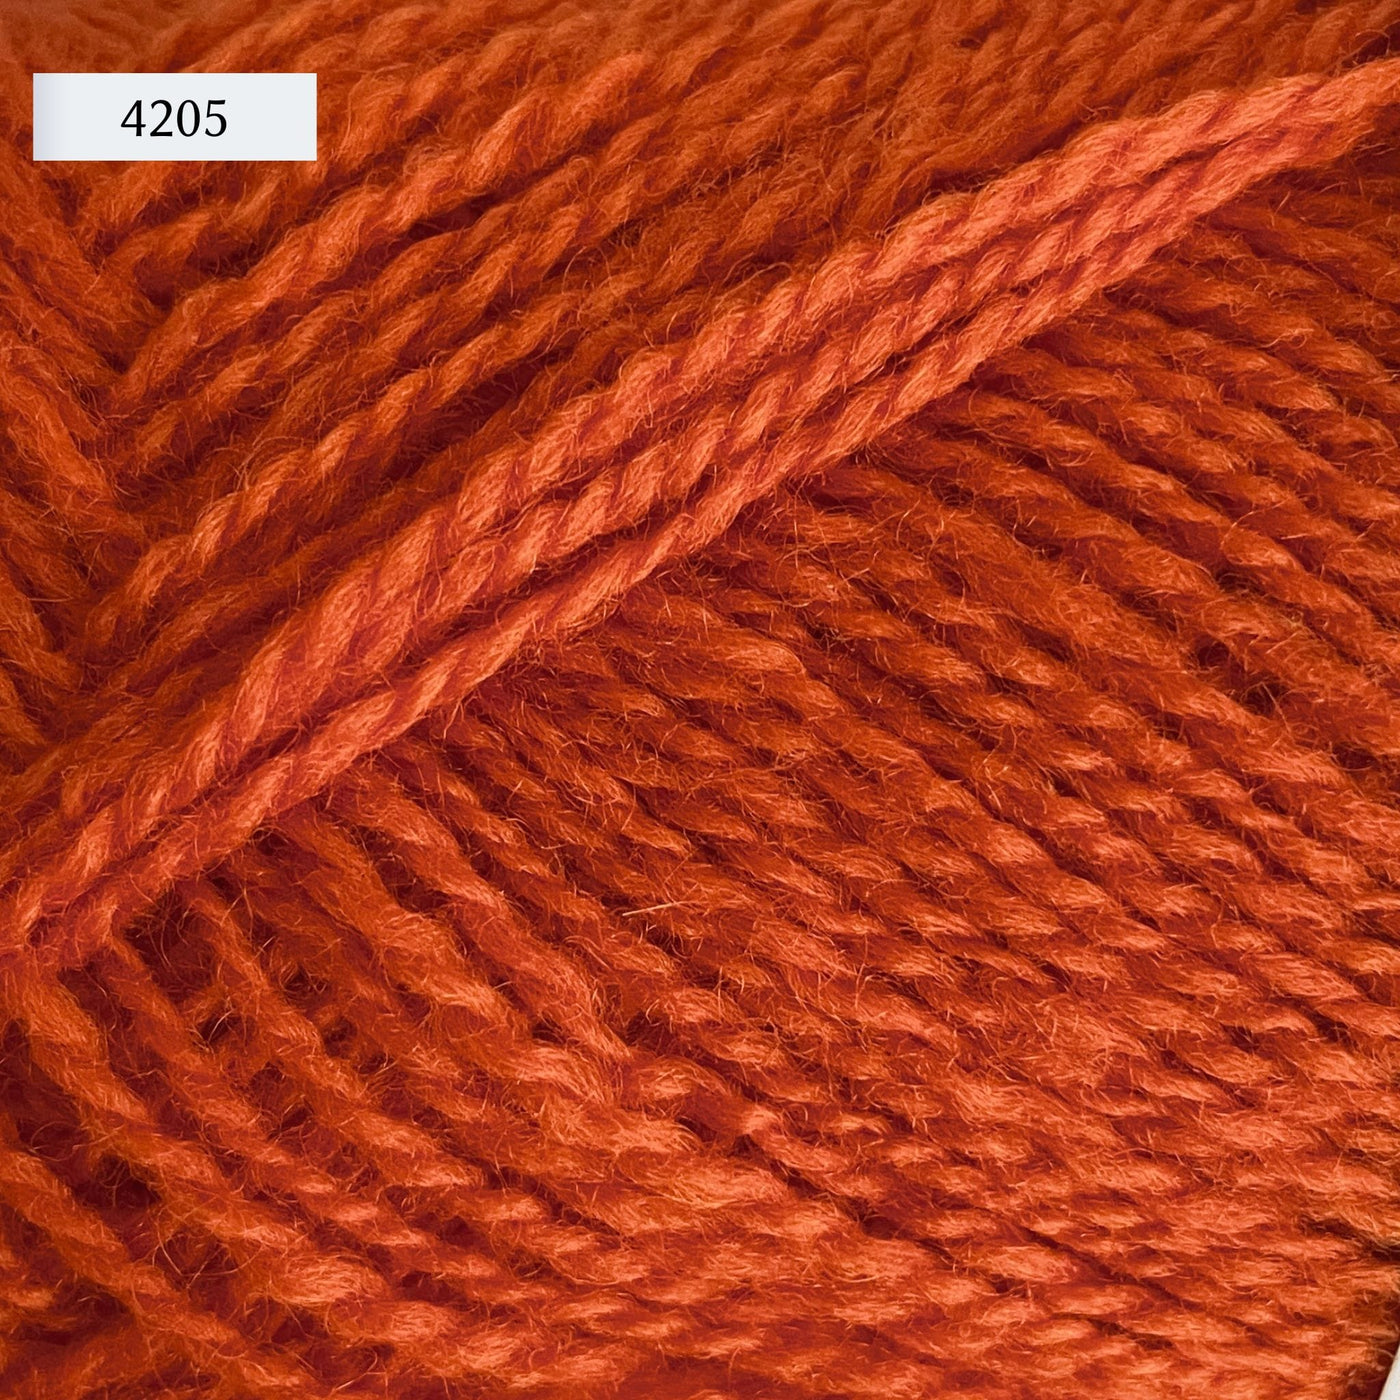 Rauma Finullgarn, a fingering/sport weight yarn, in color 4205, a bright primary orange